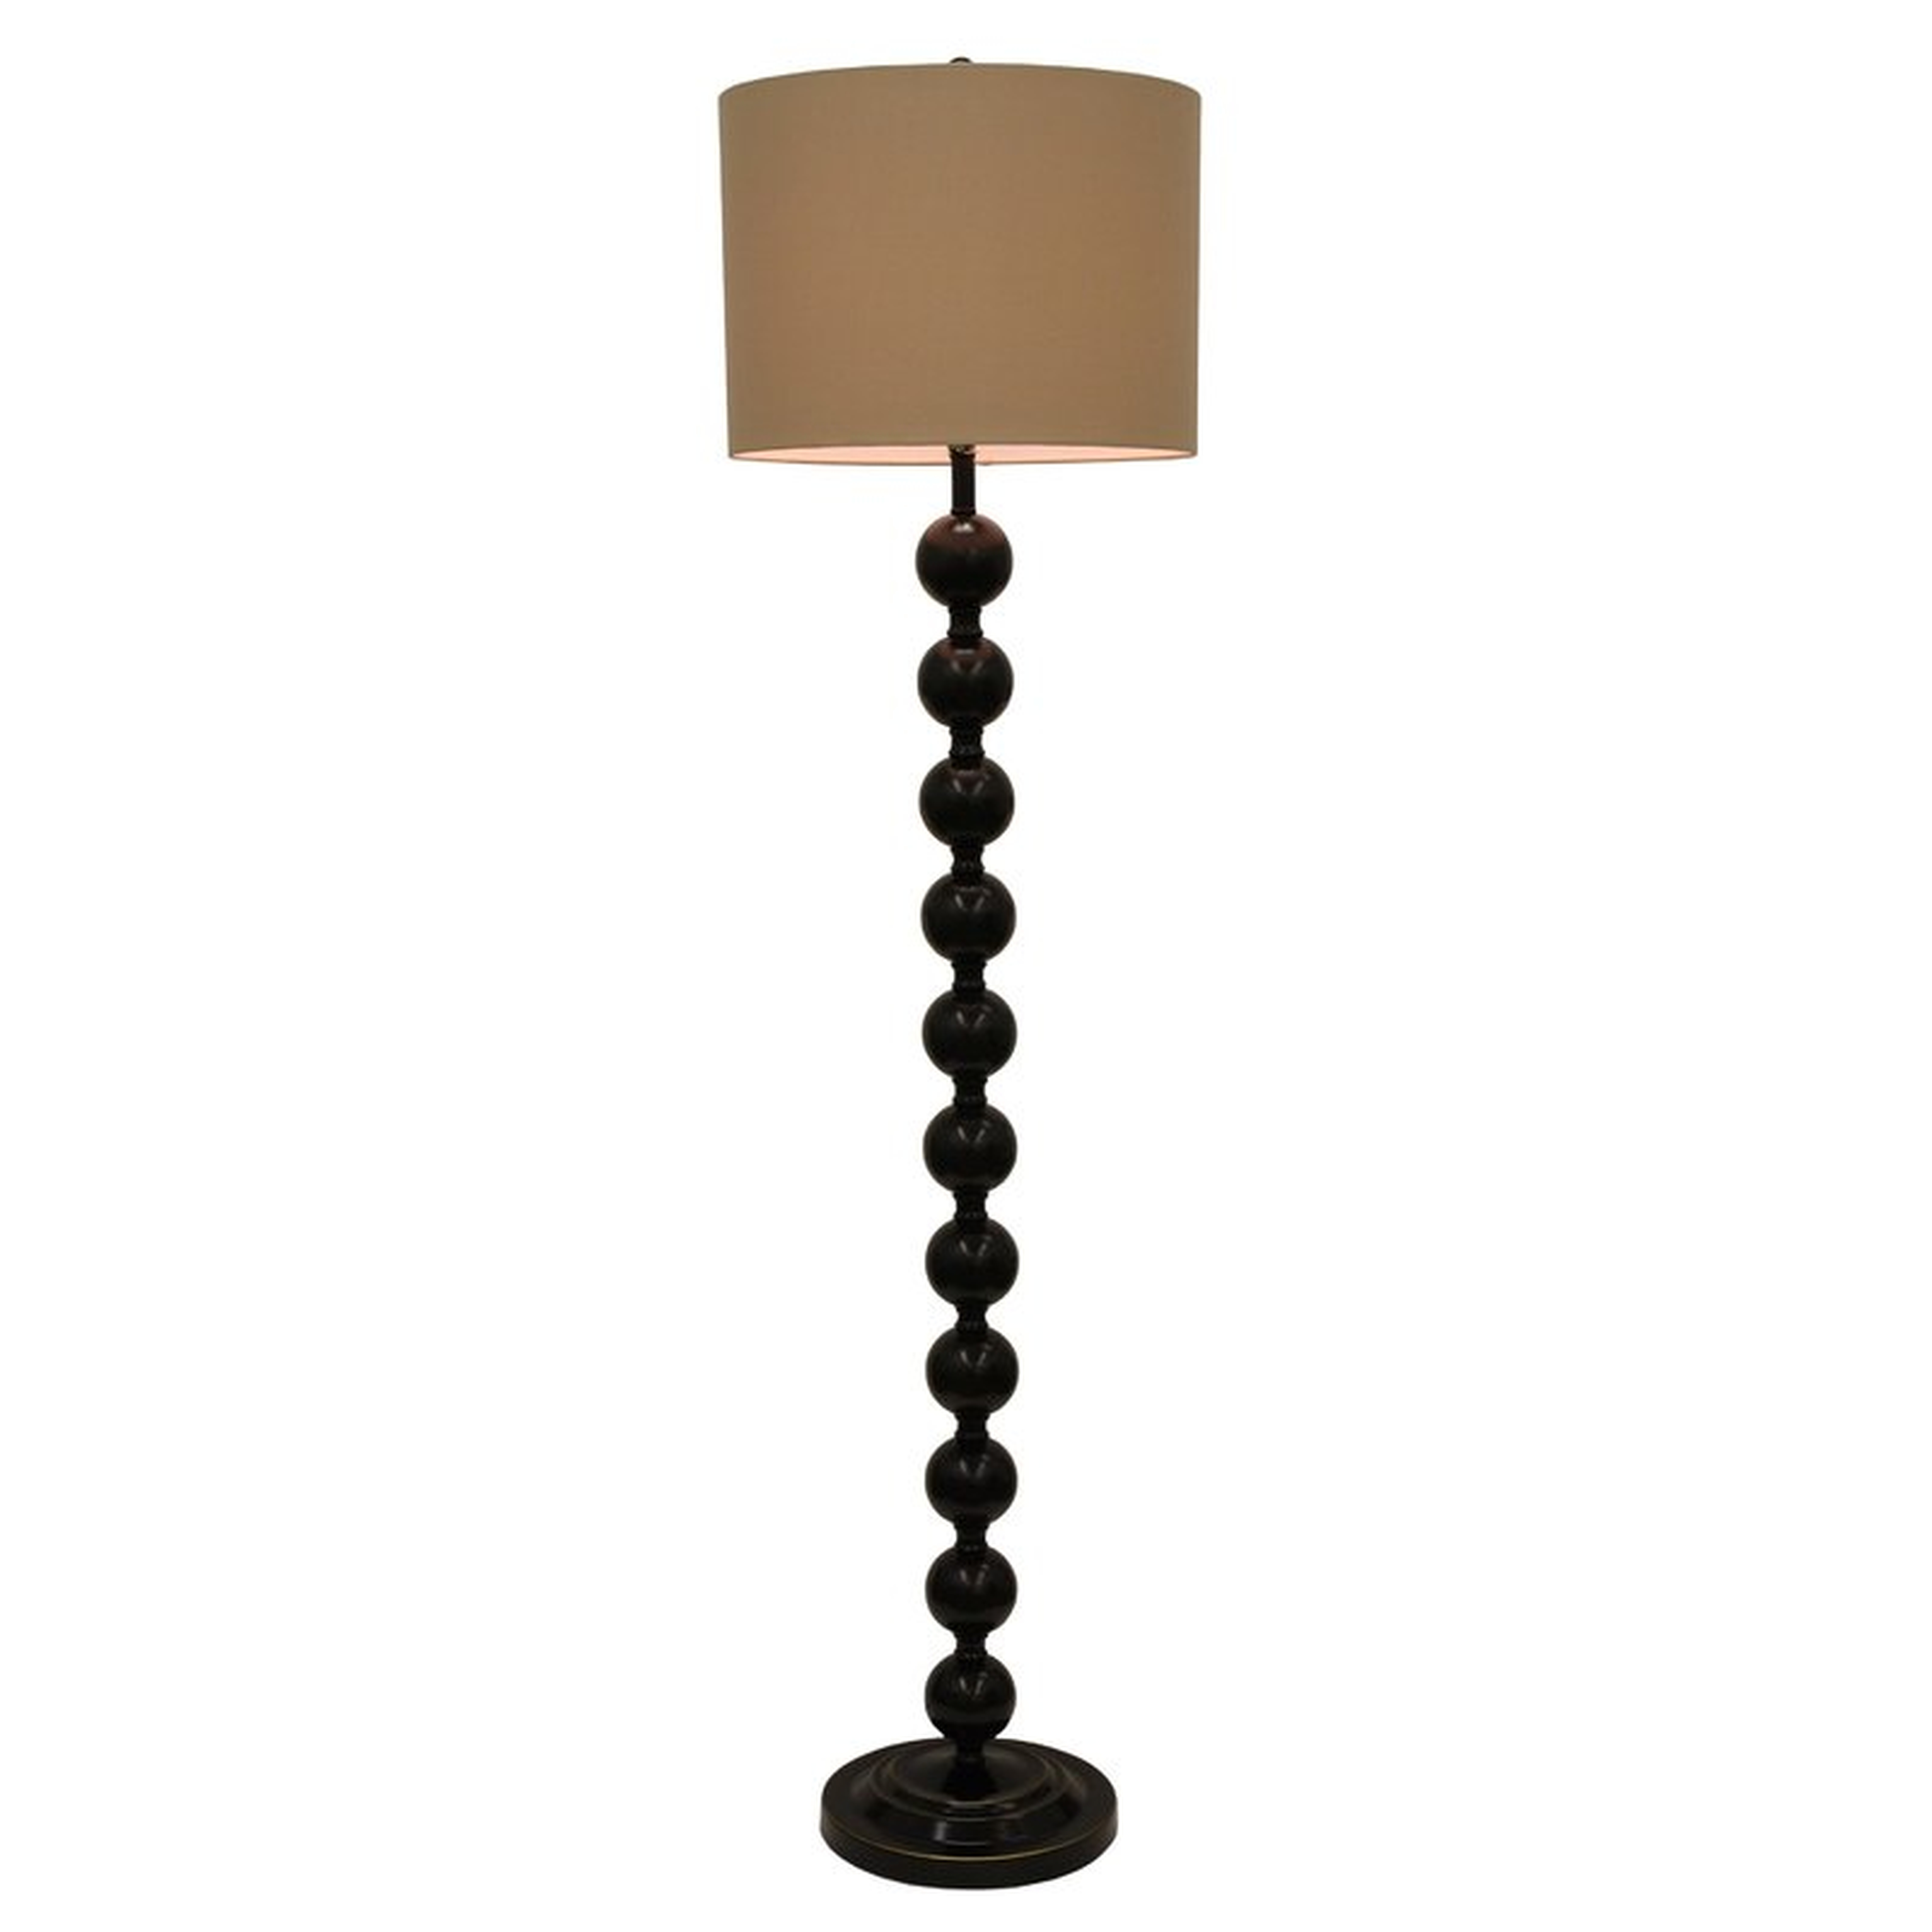 Gael 59" Floor Lamp, Bronzel - Wayfair